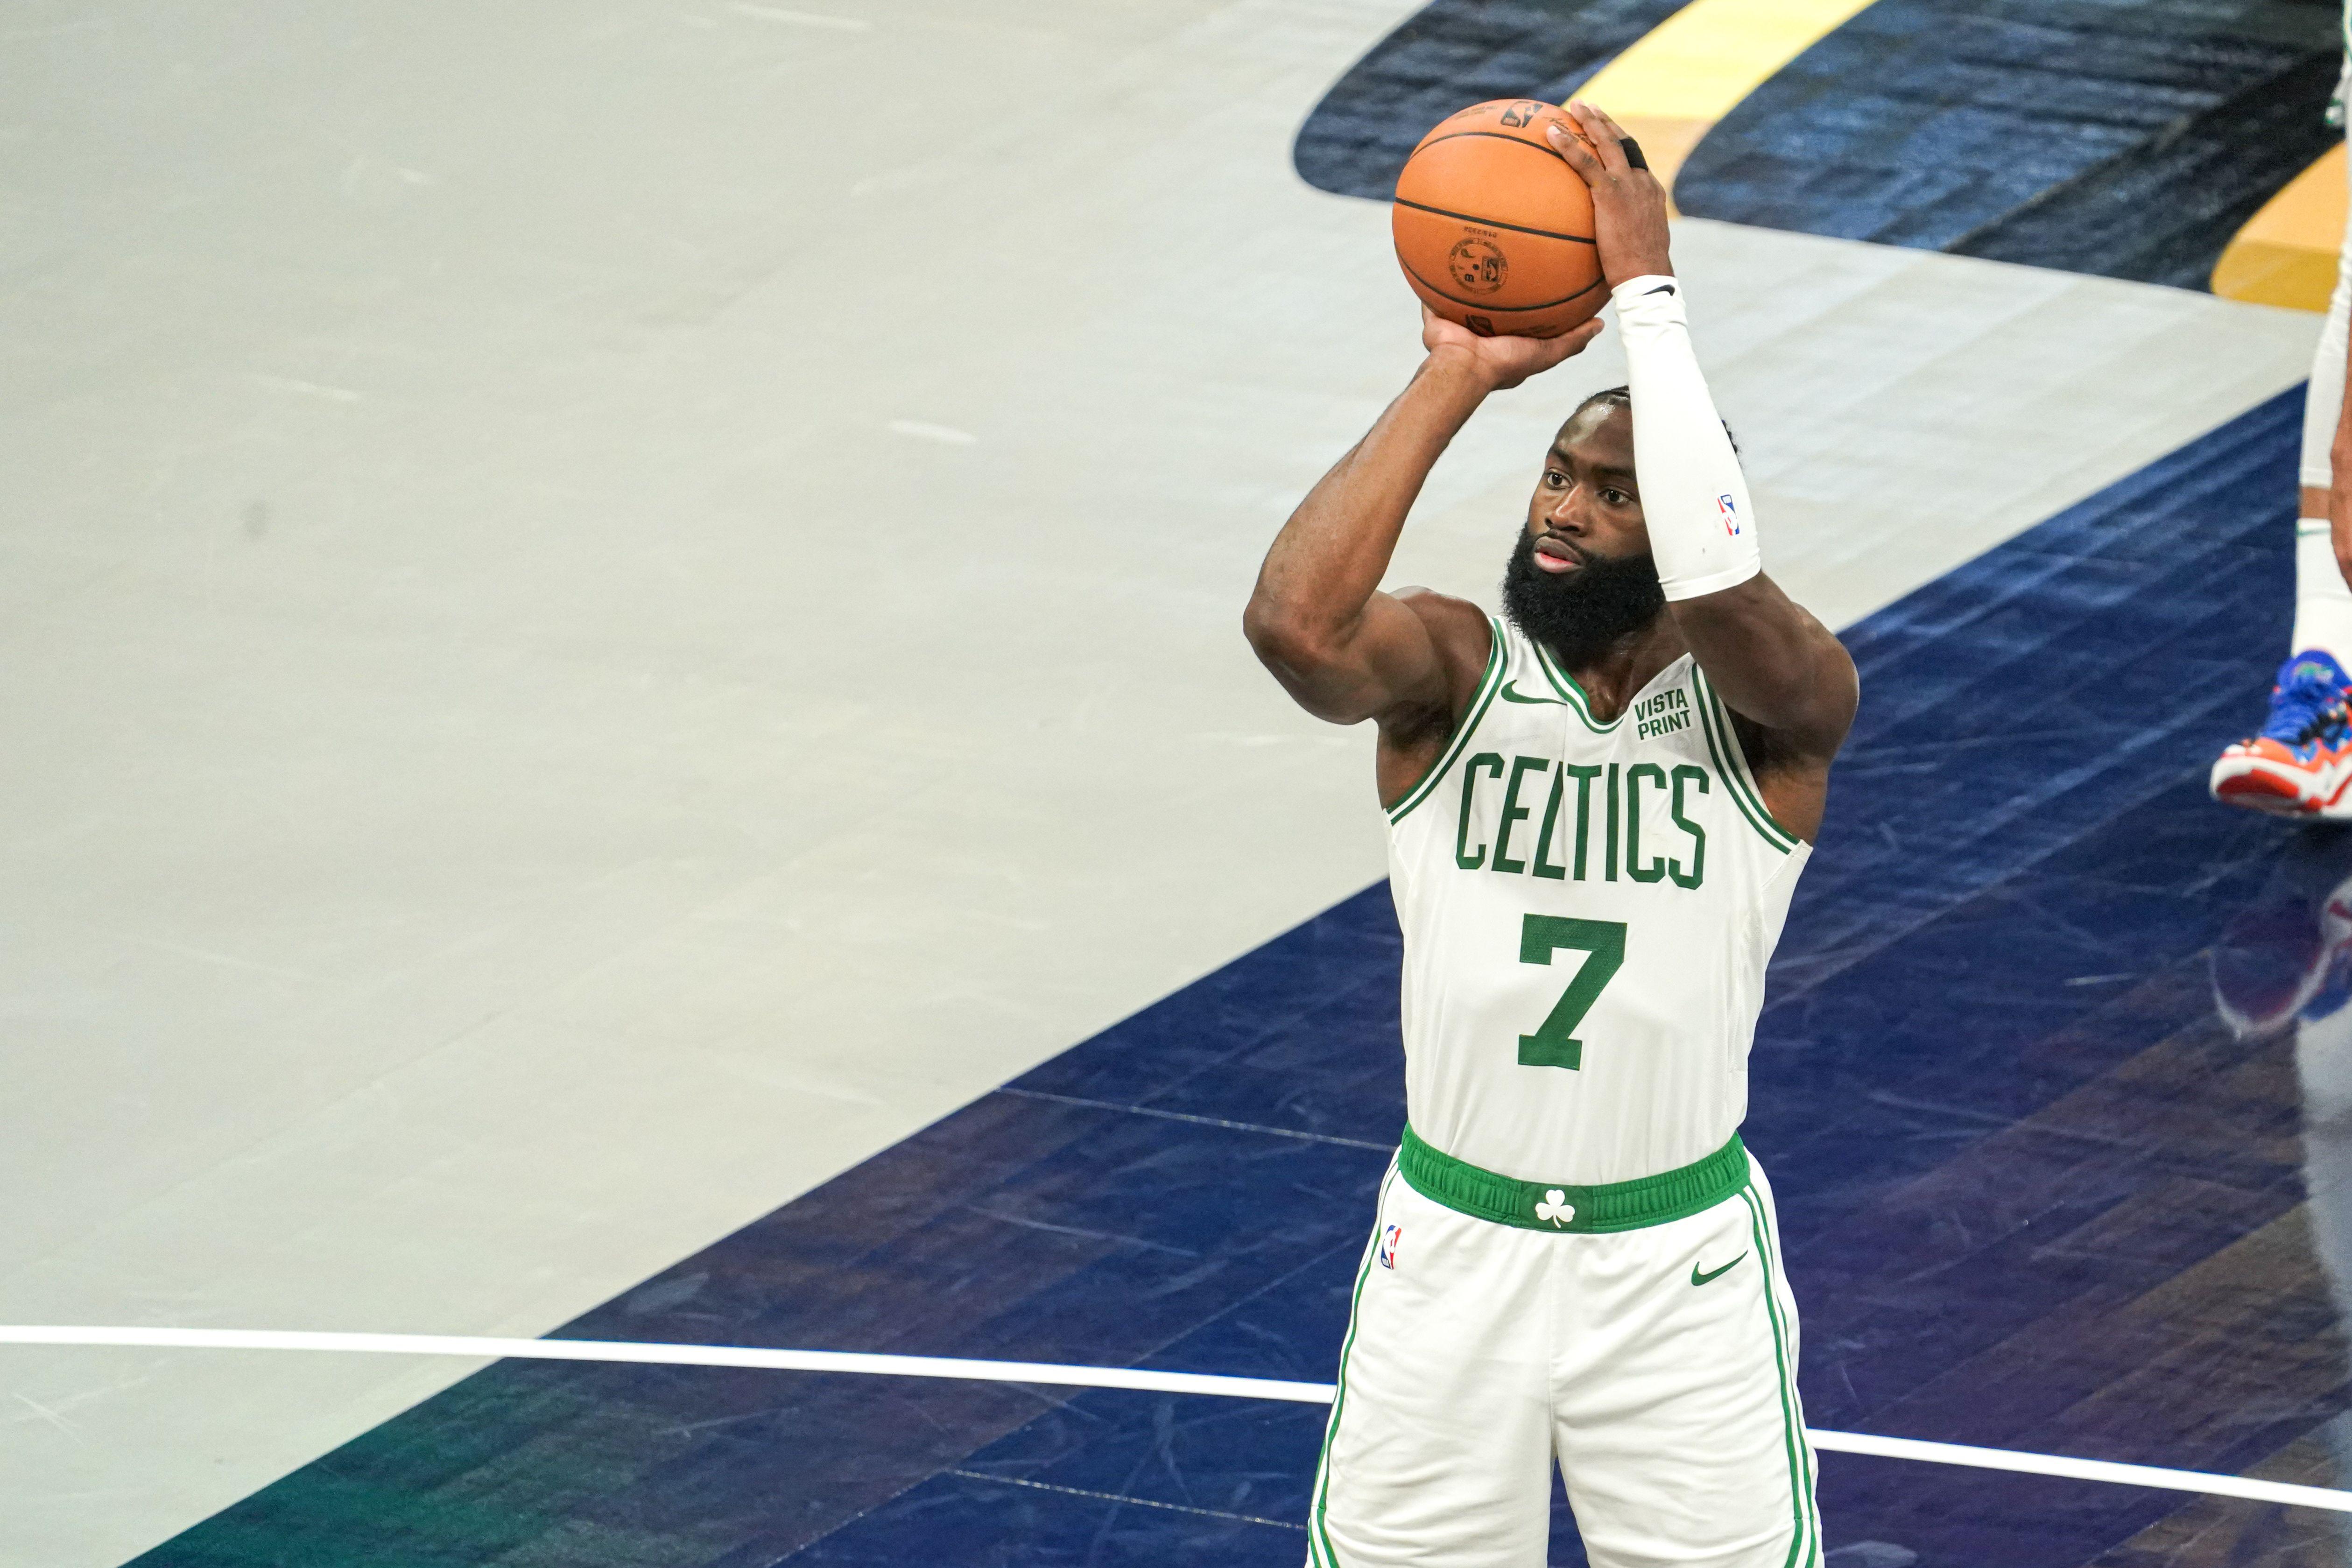 Finali Nba - Boston Celtics vincono gara 1